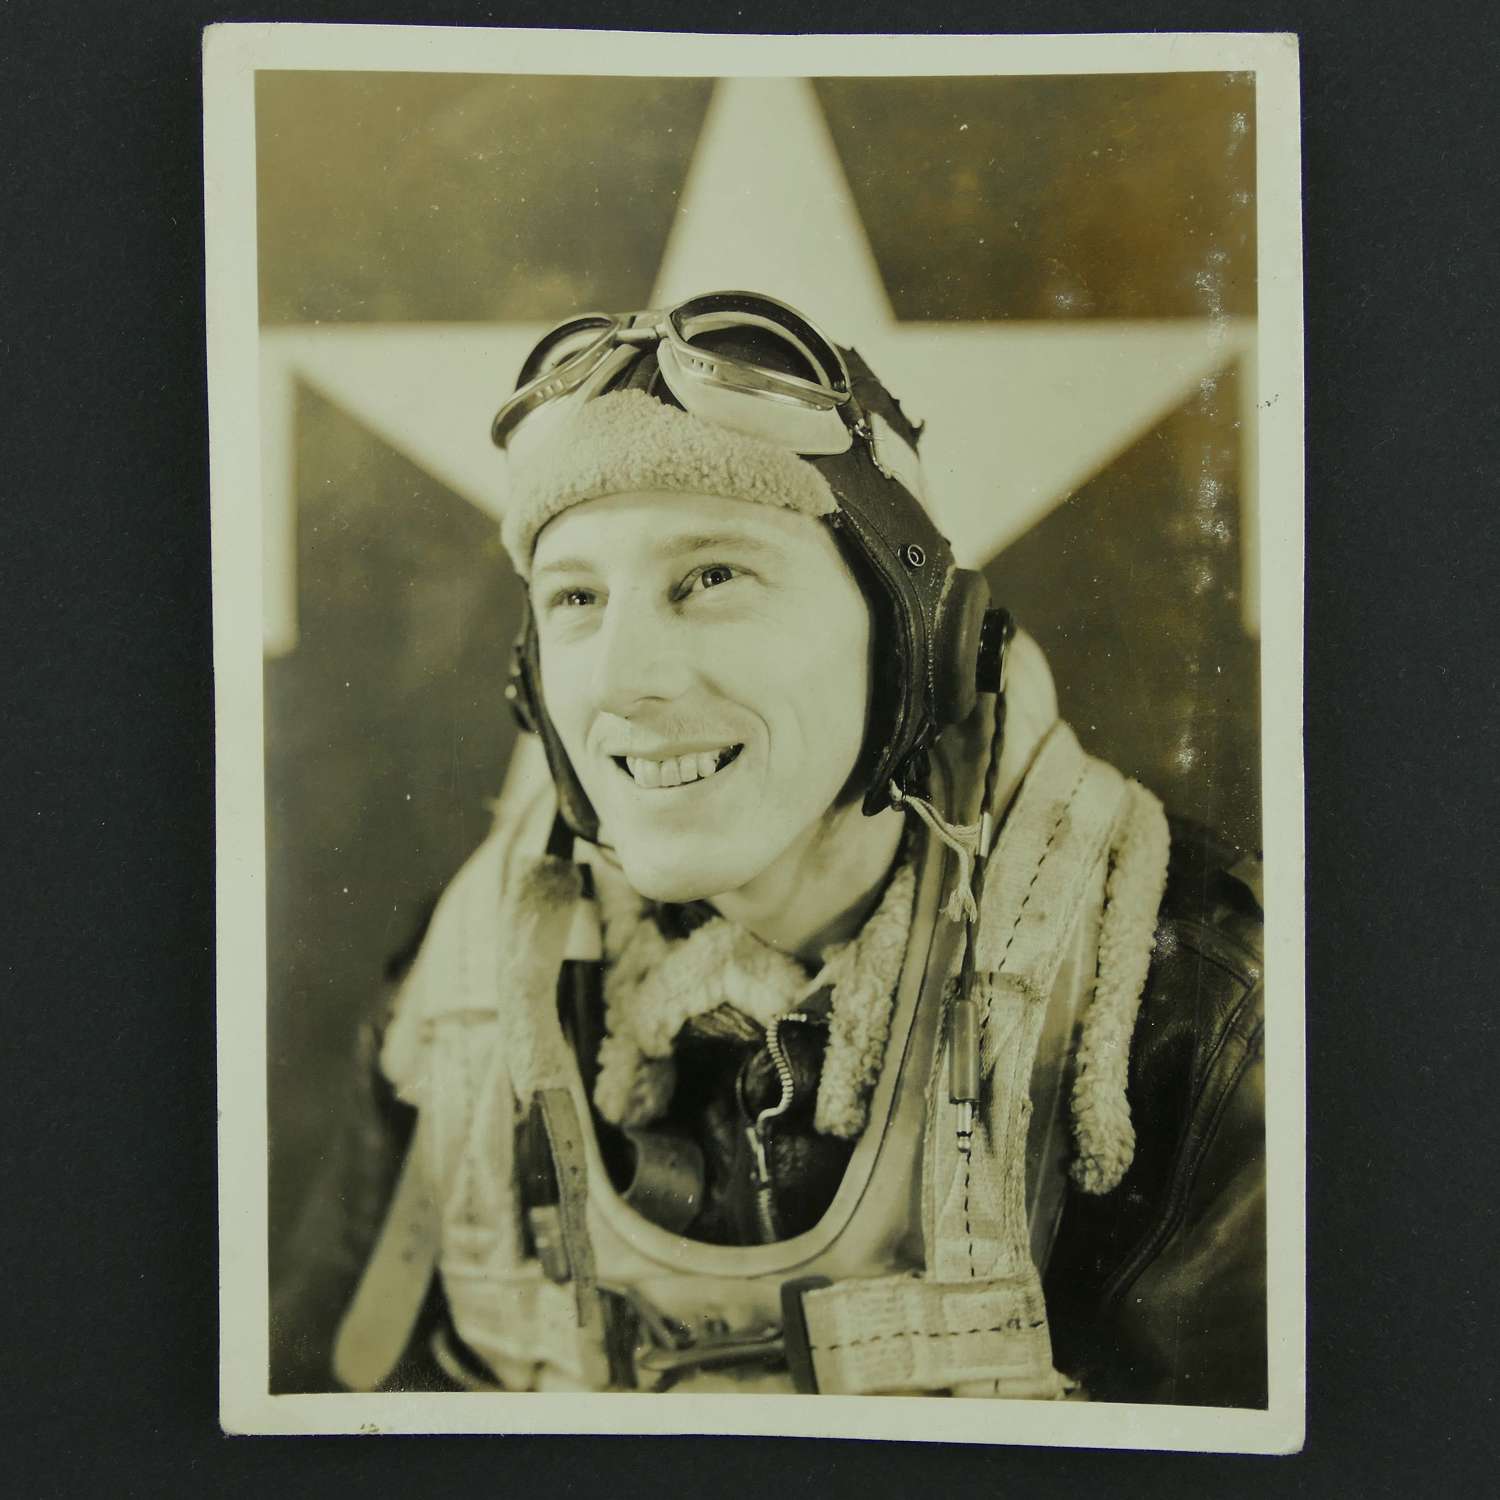 USAAF aircrew photograph